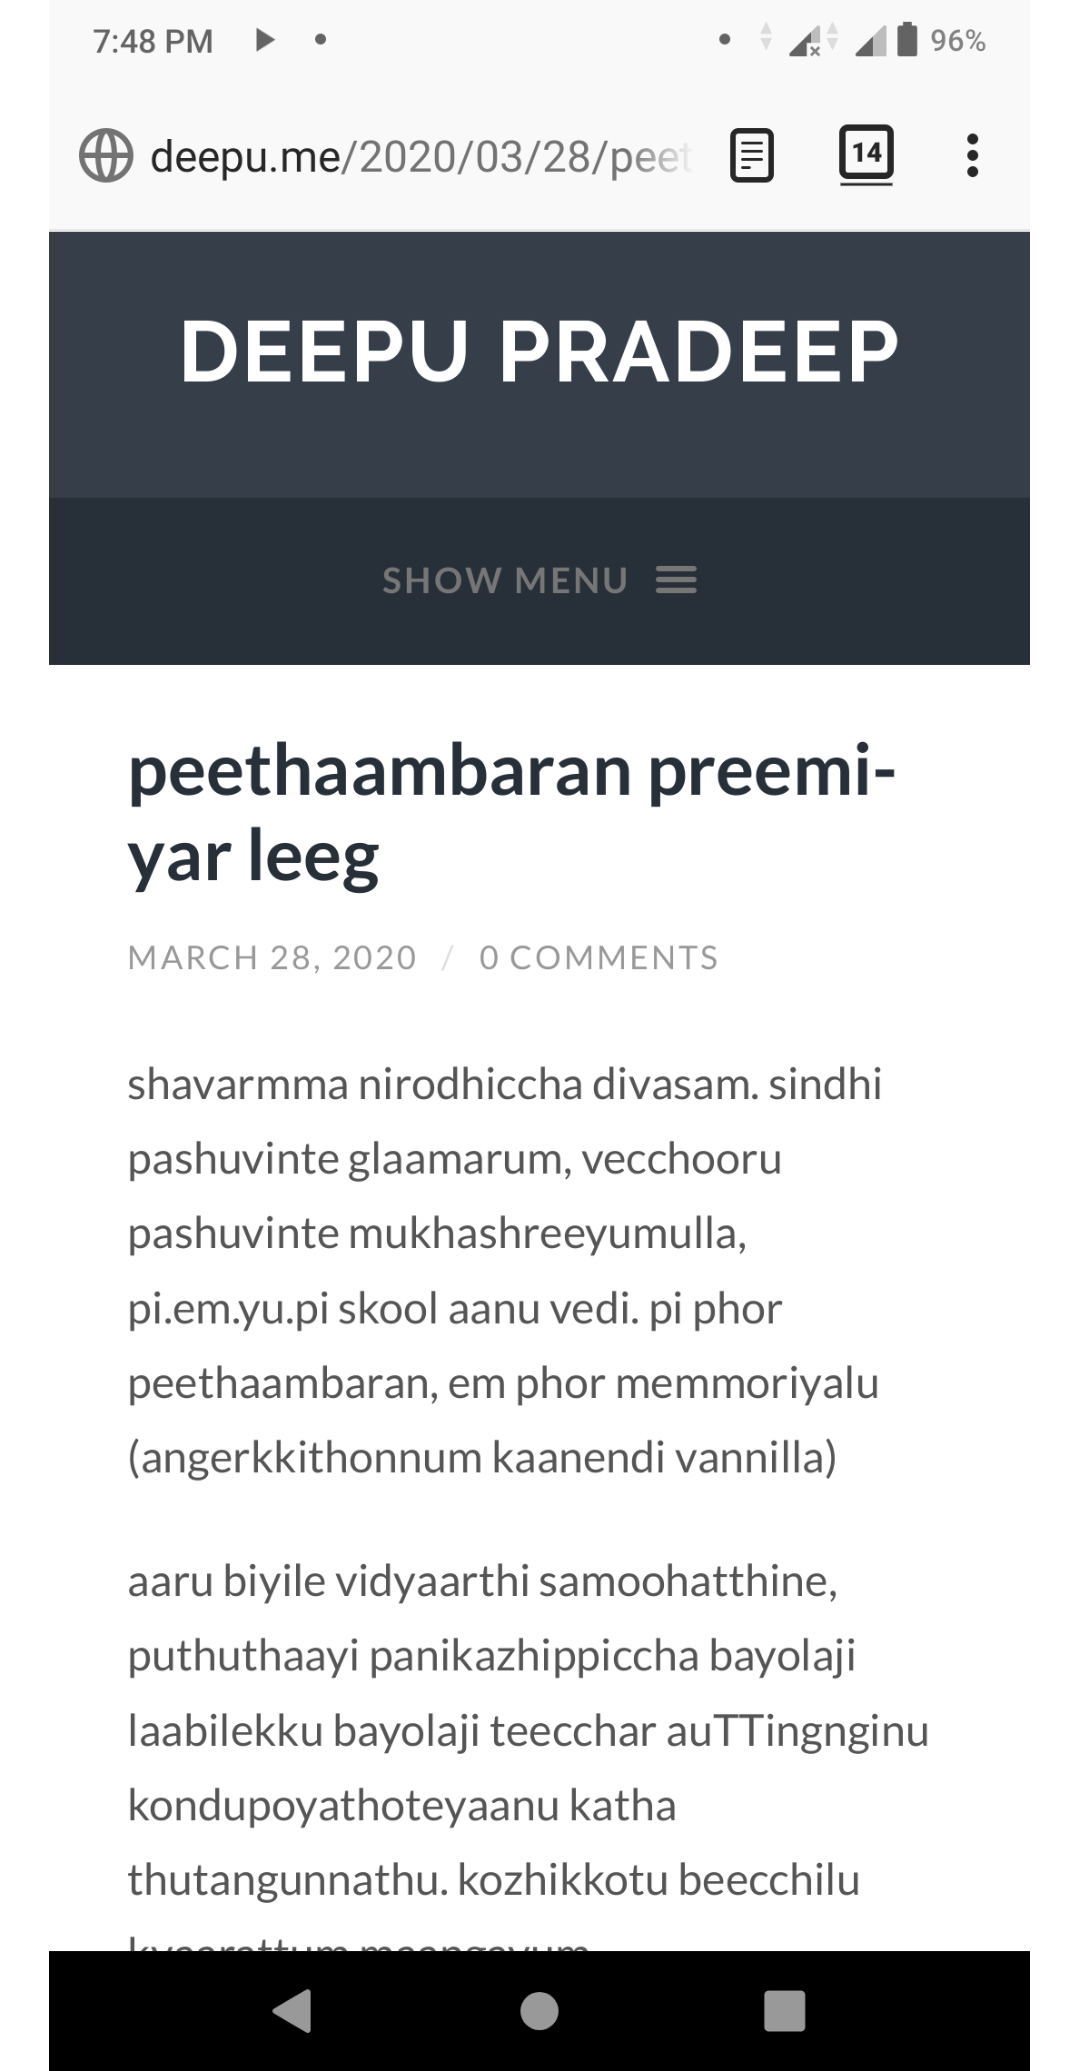 Malayalam webpage after running Indic-En